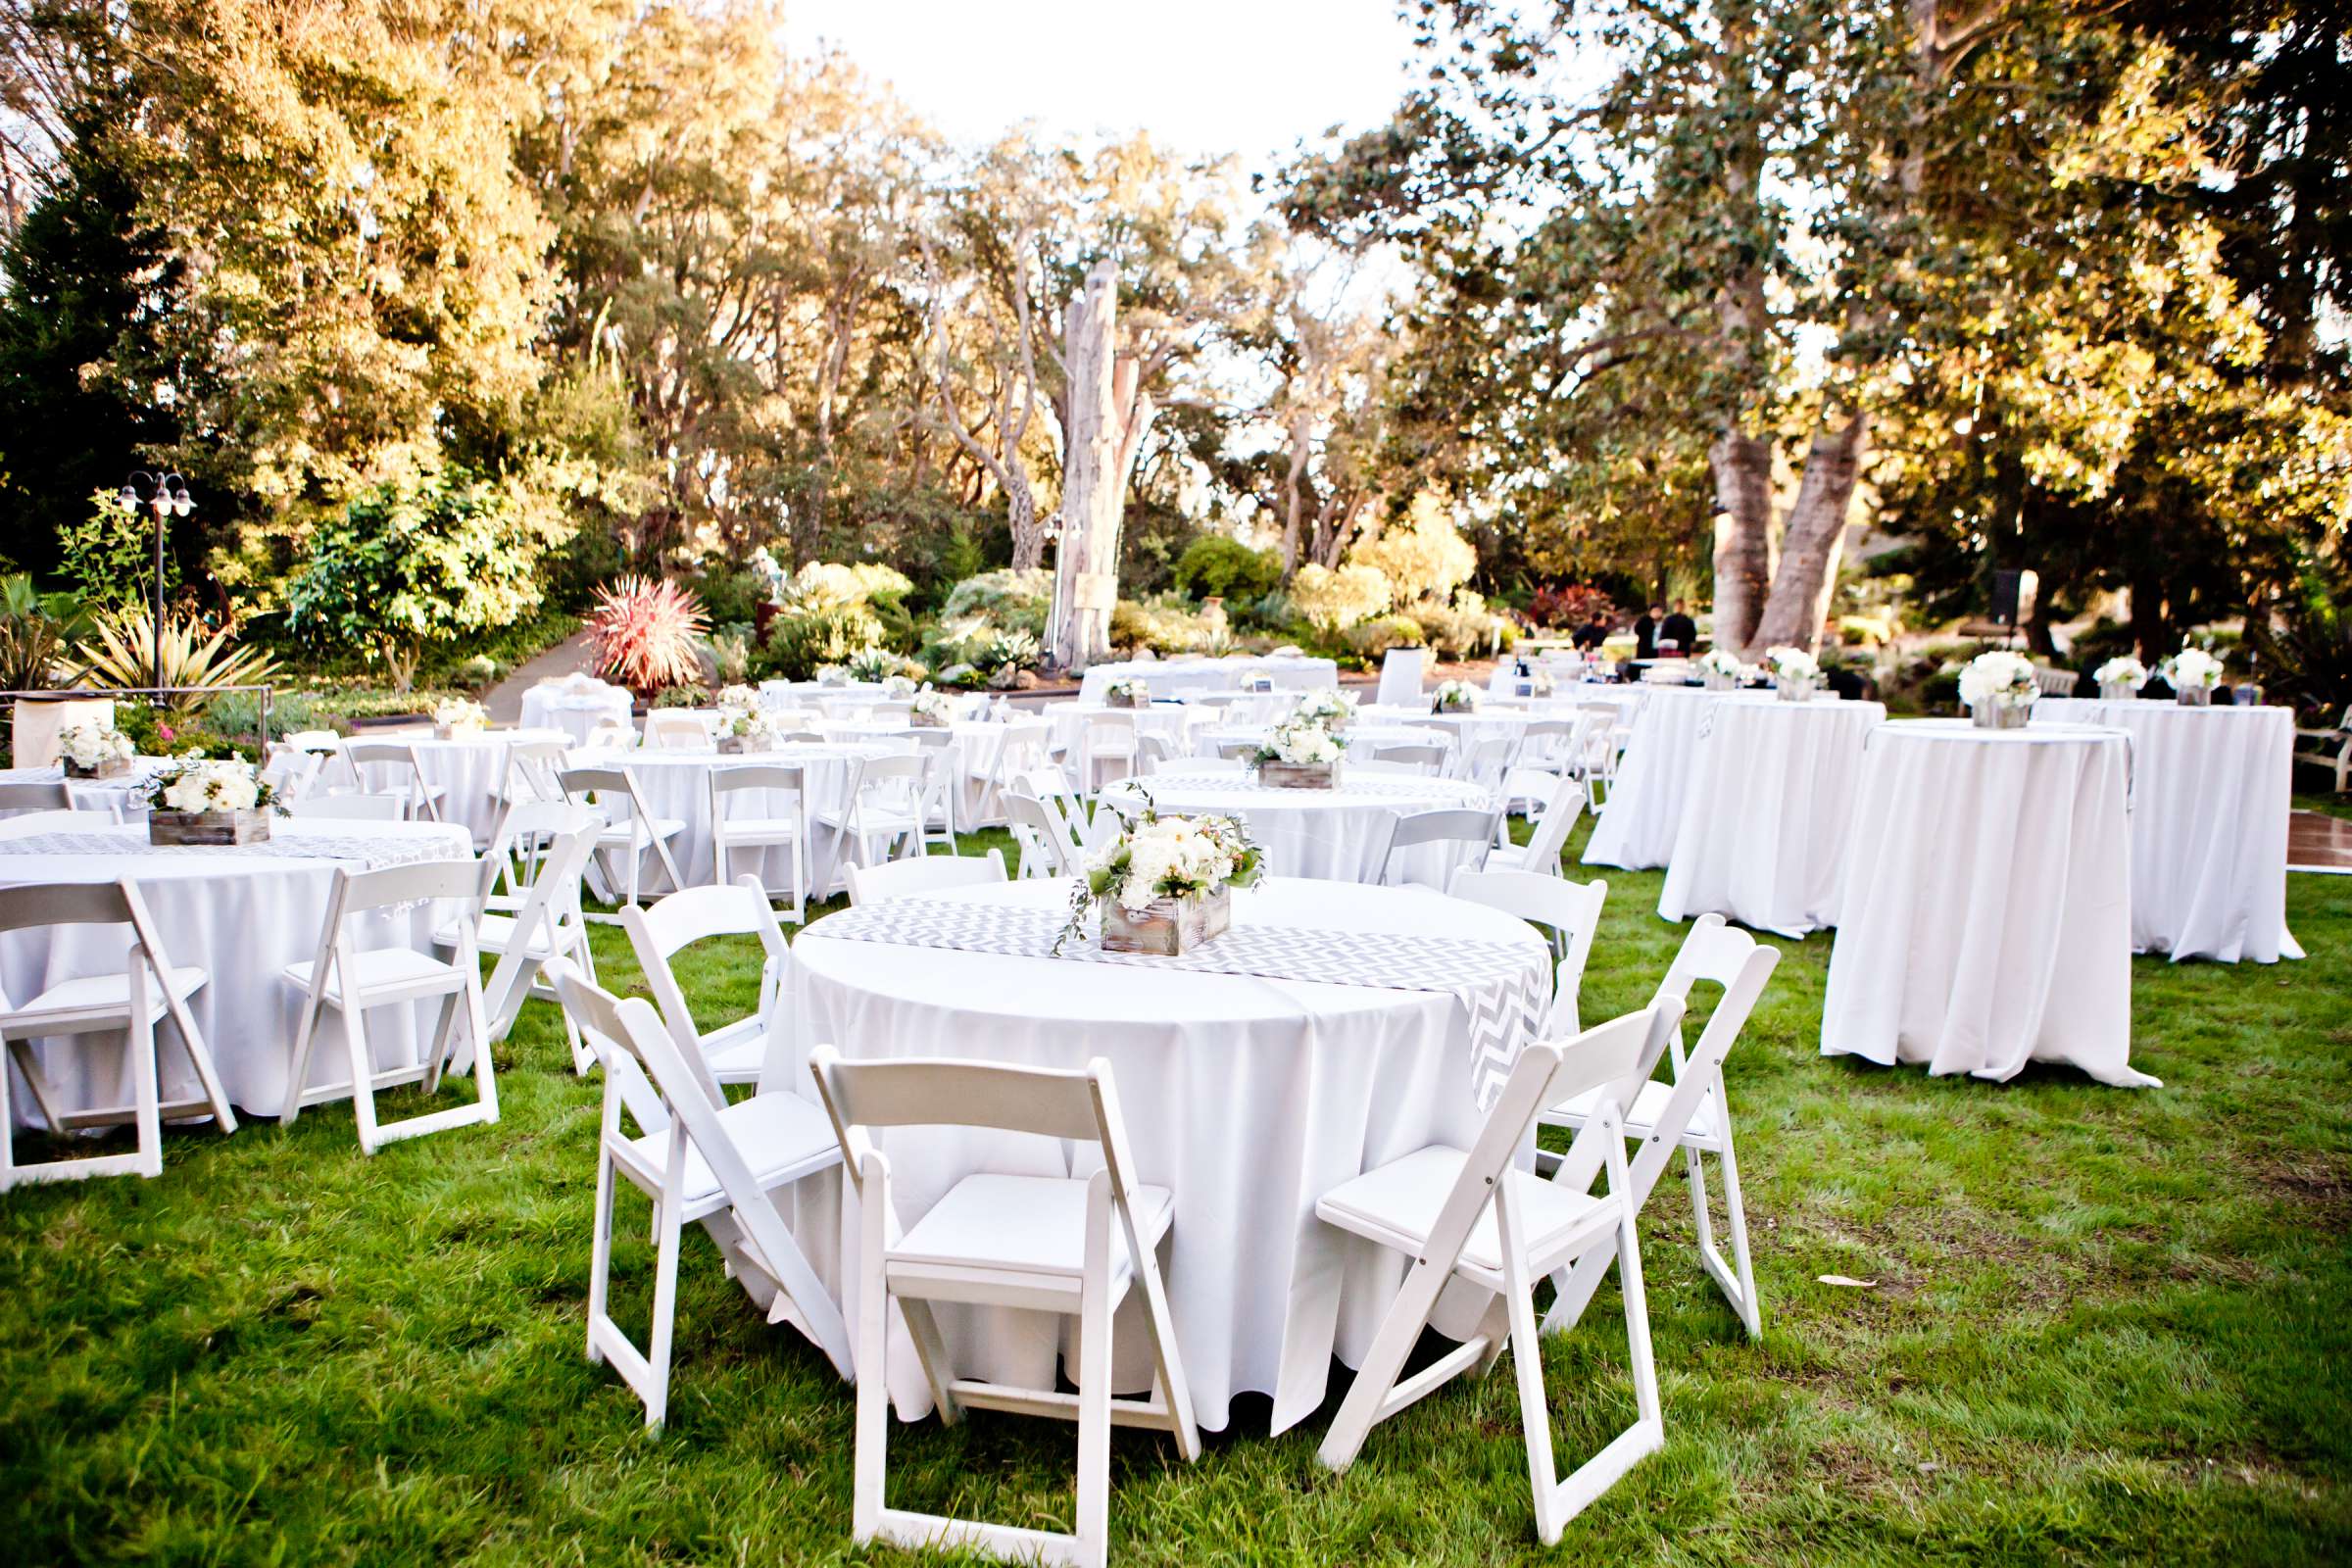 San Diego Botanic Garden Wedding, Lauren and Bryant Wedding Photo #138891 by True Photography